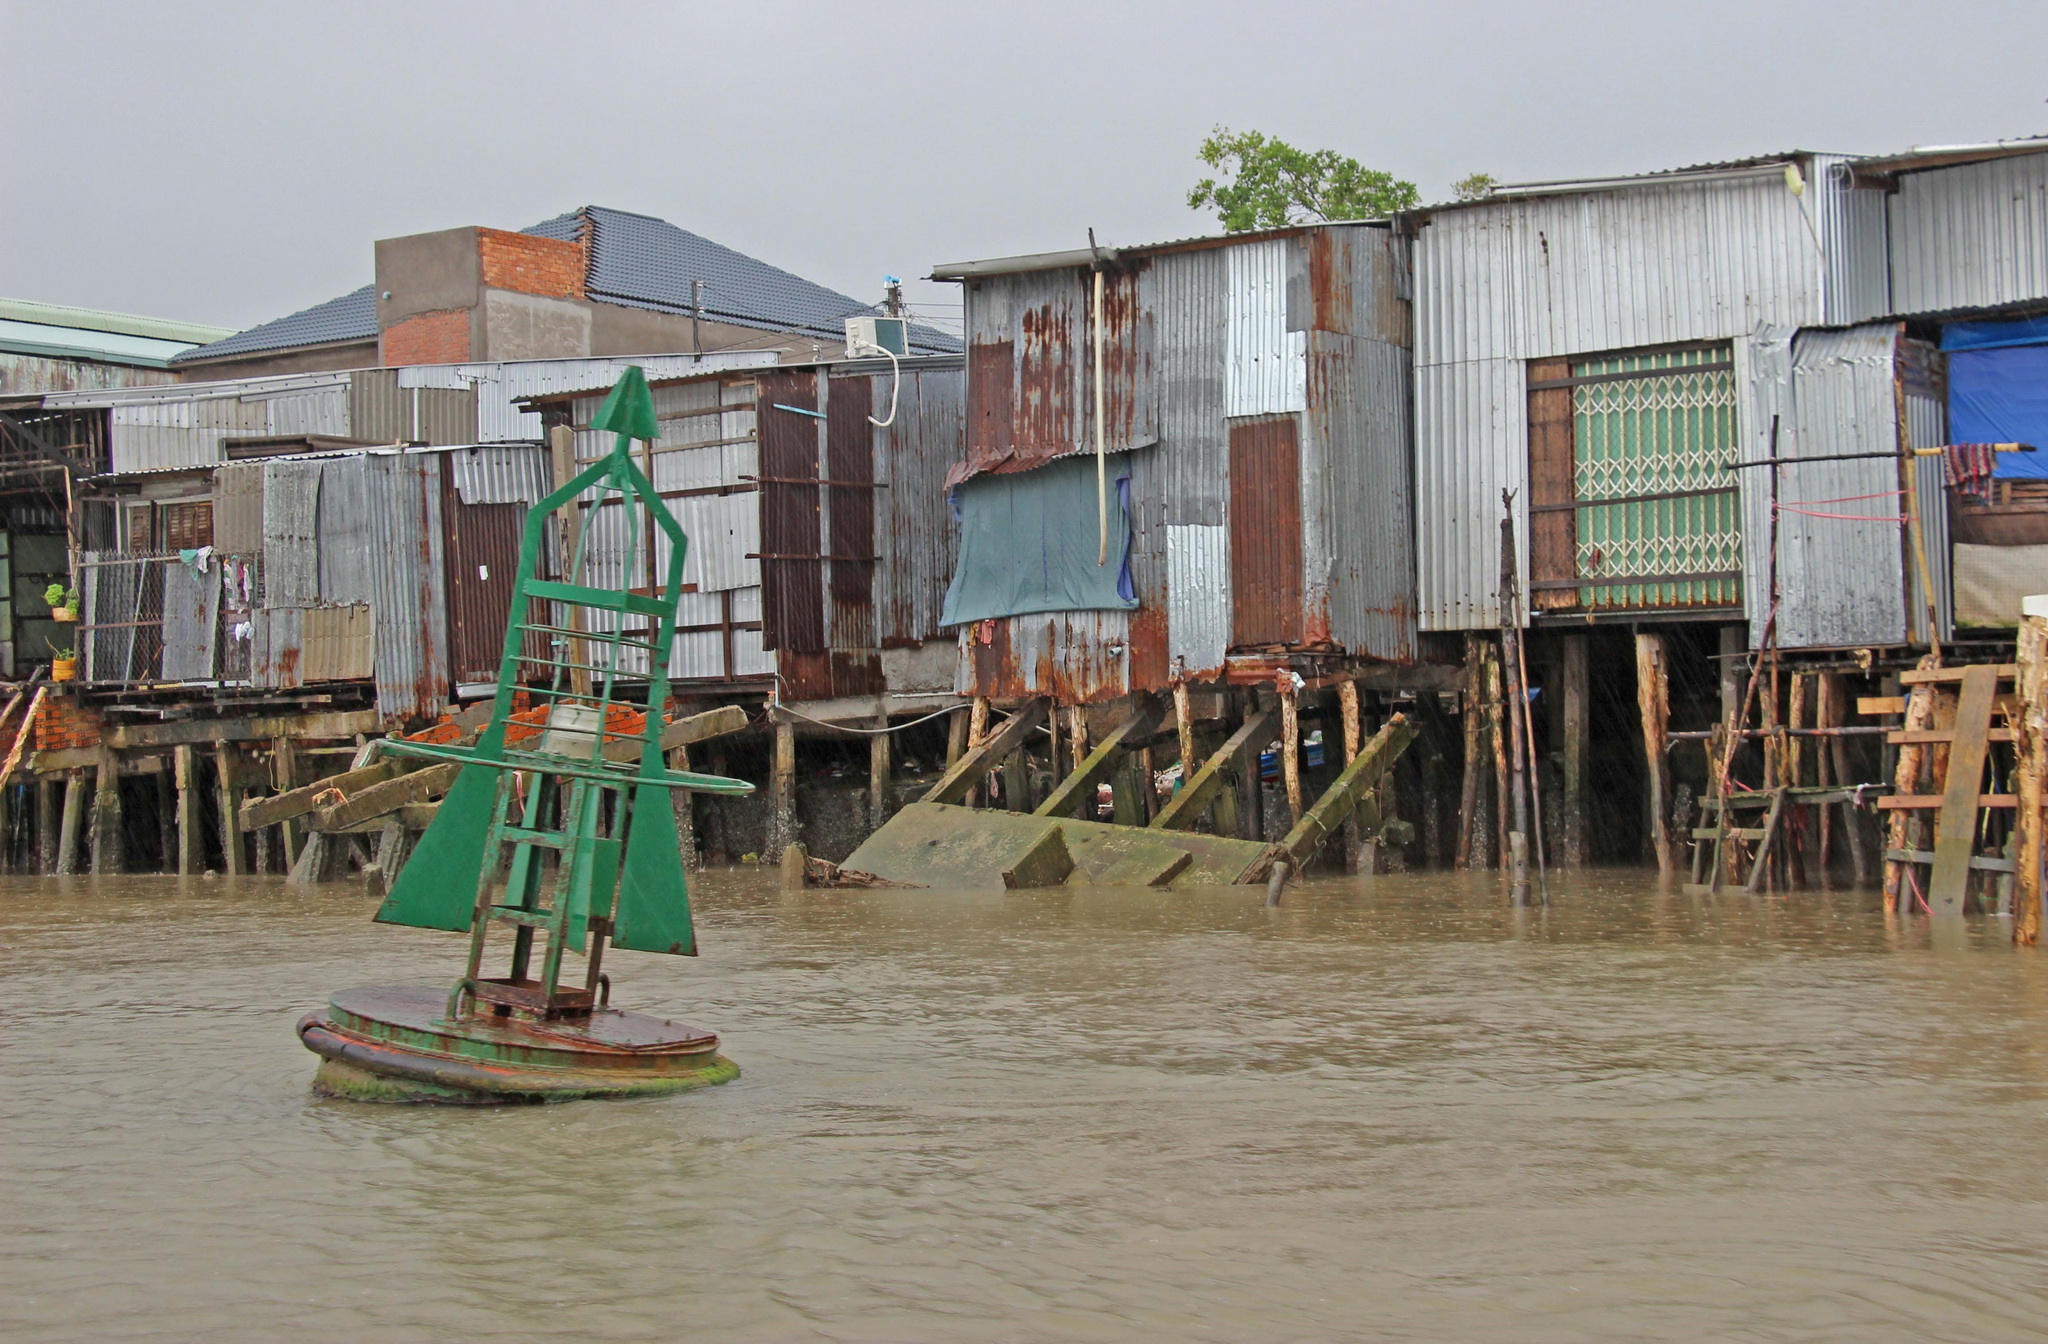 Tình trạng sạt lở bờ sông ven thị trấn Năm Căn đang trong tình trạng đặc biệt nguy hiểm, đe dọa trực tiếp đến đời sống của người dân trong khu vực. (Ảnh: Huỳnh Thế Anh/TTXVN)